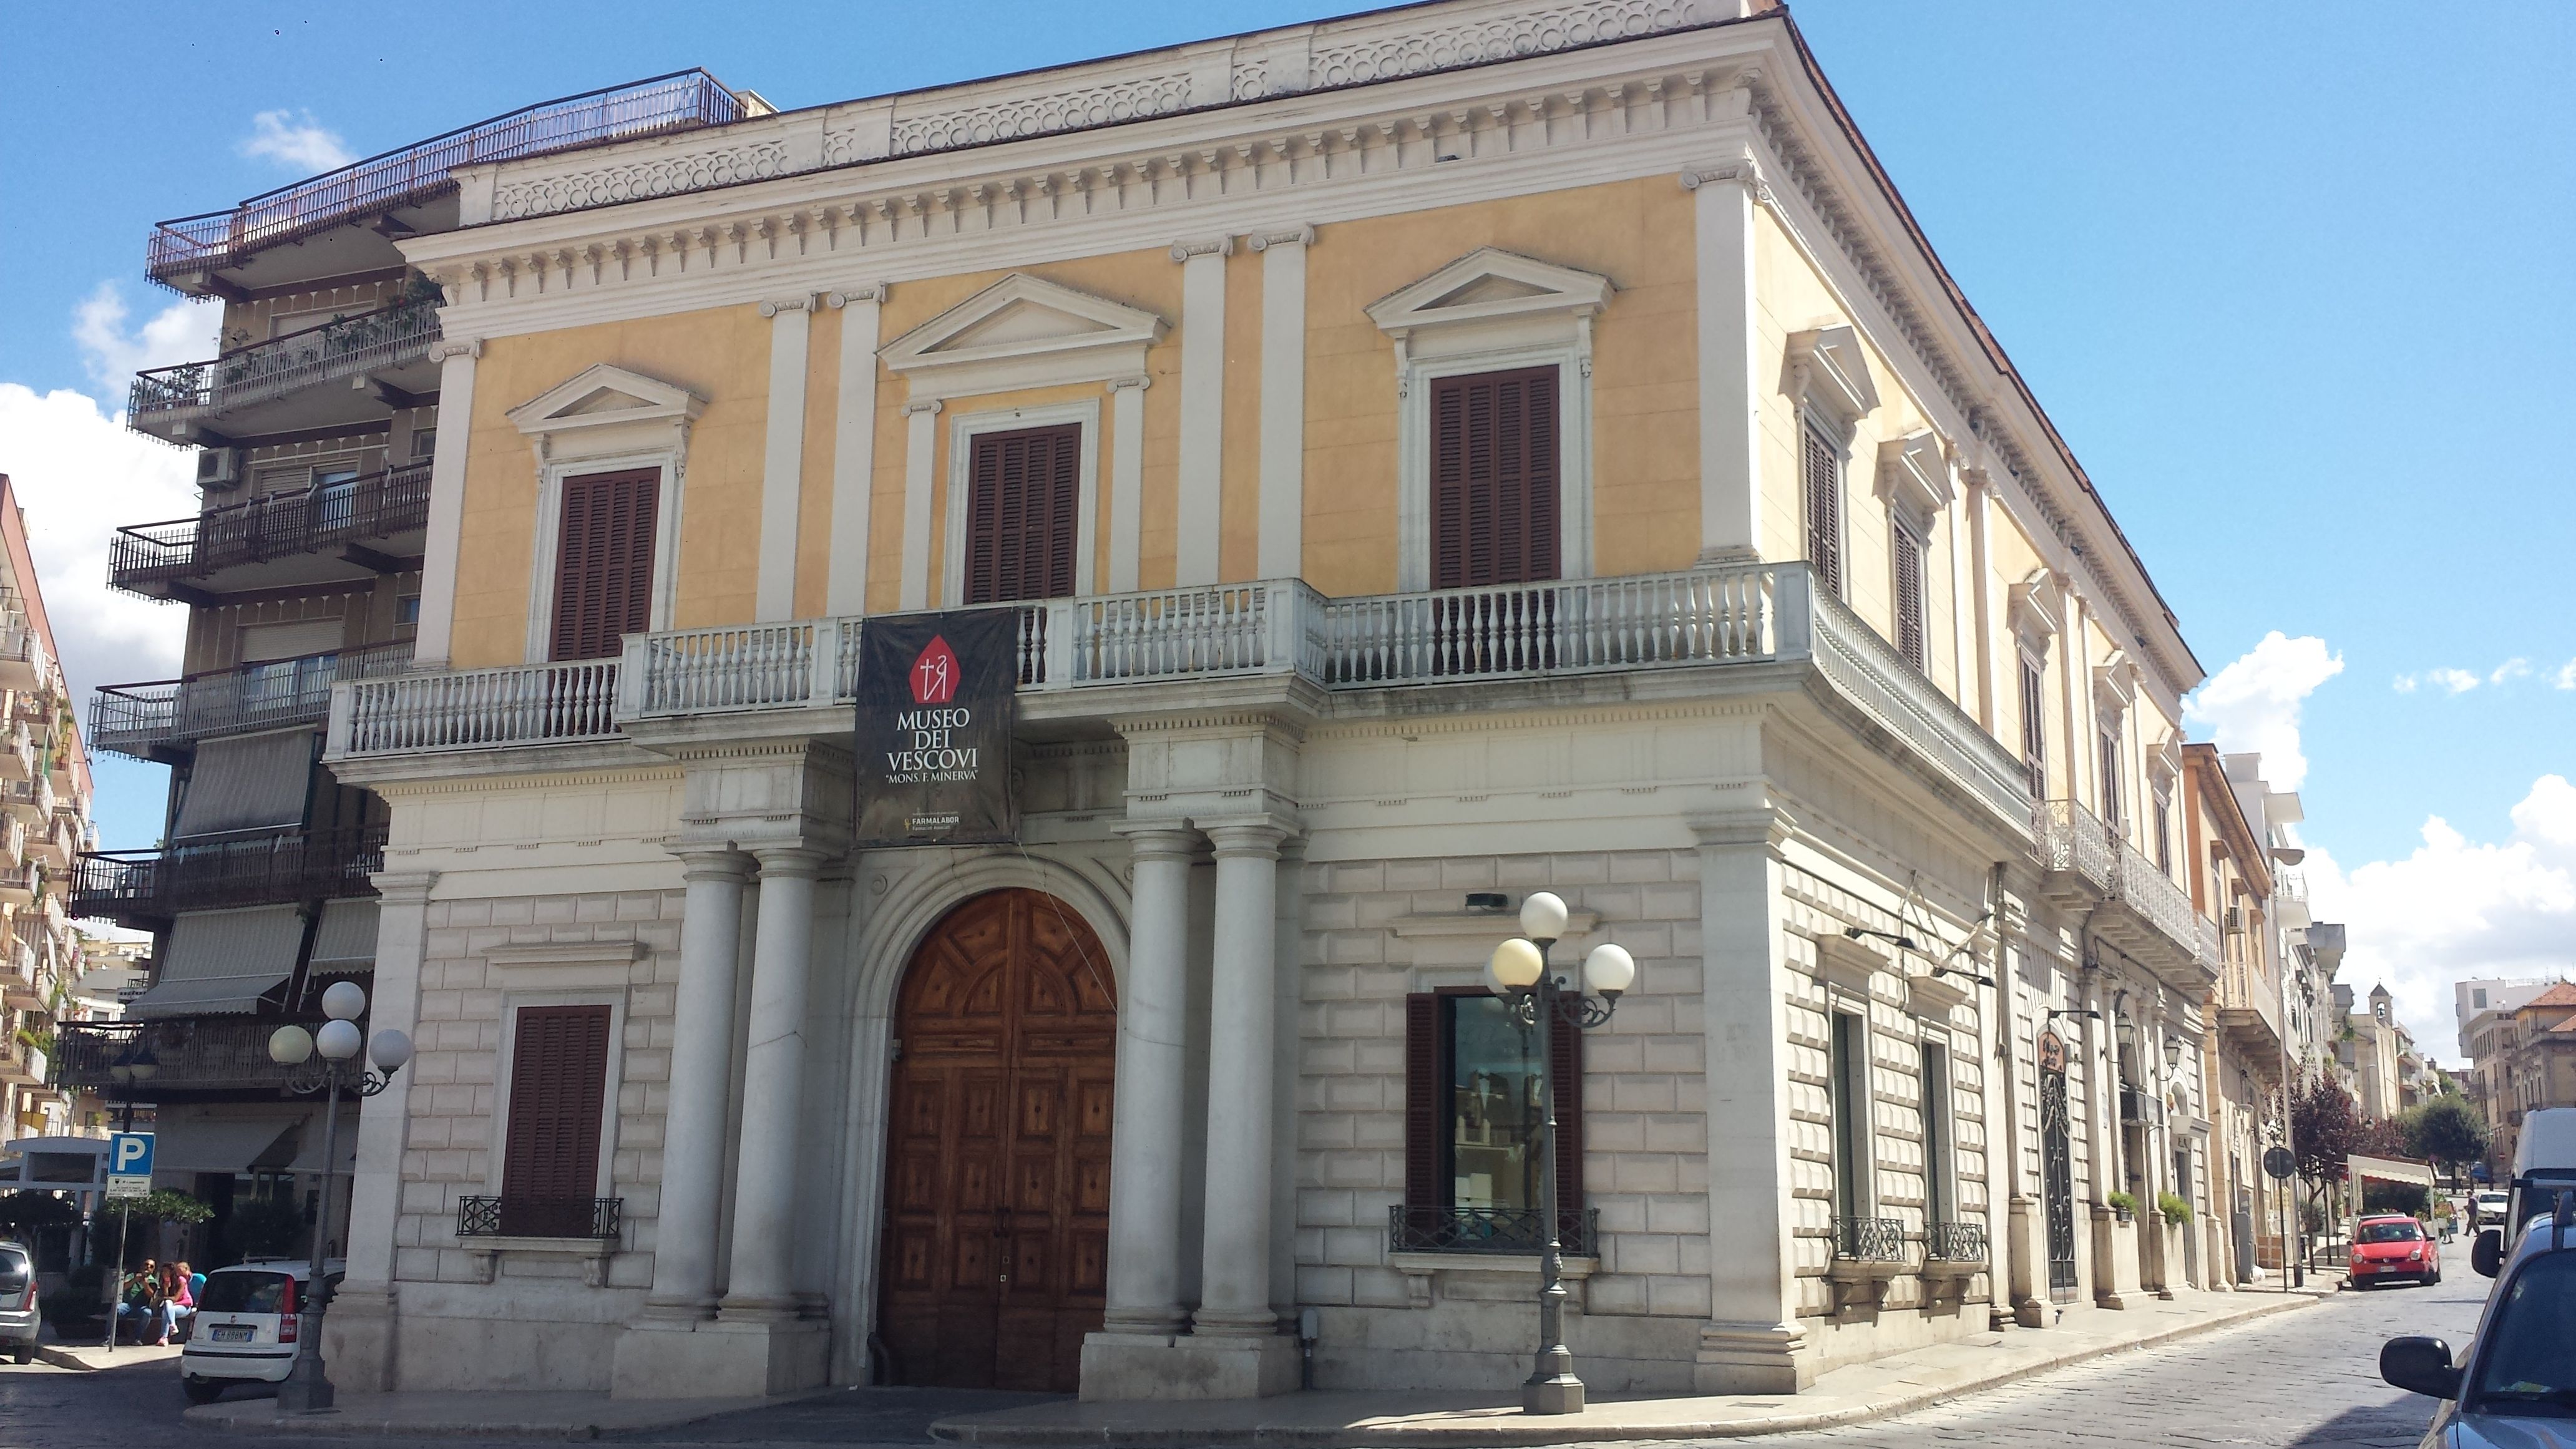 Palazzo Minerva - Museo dei Vescovi